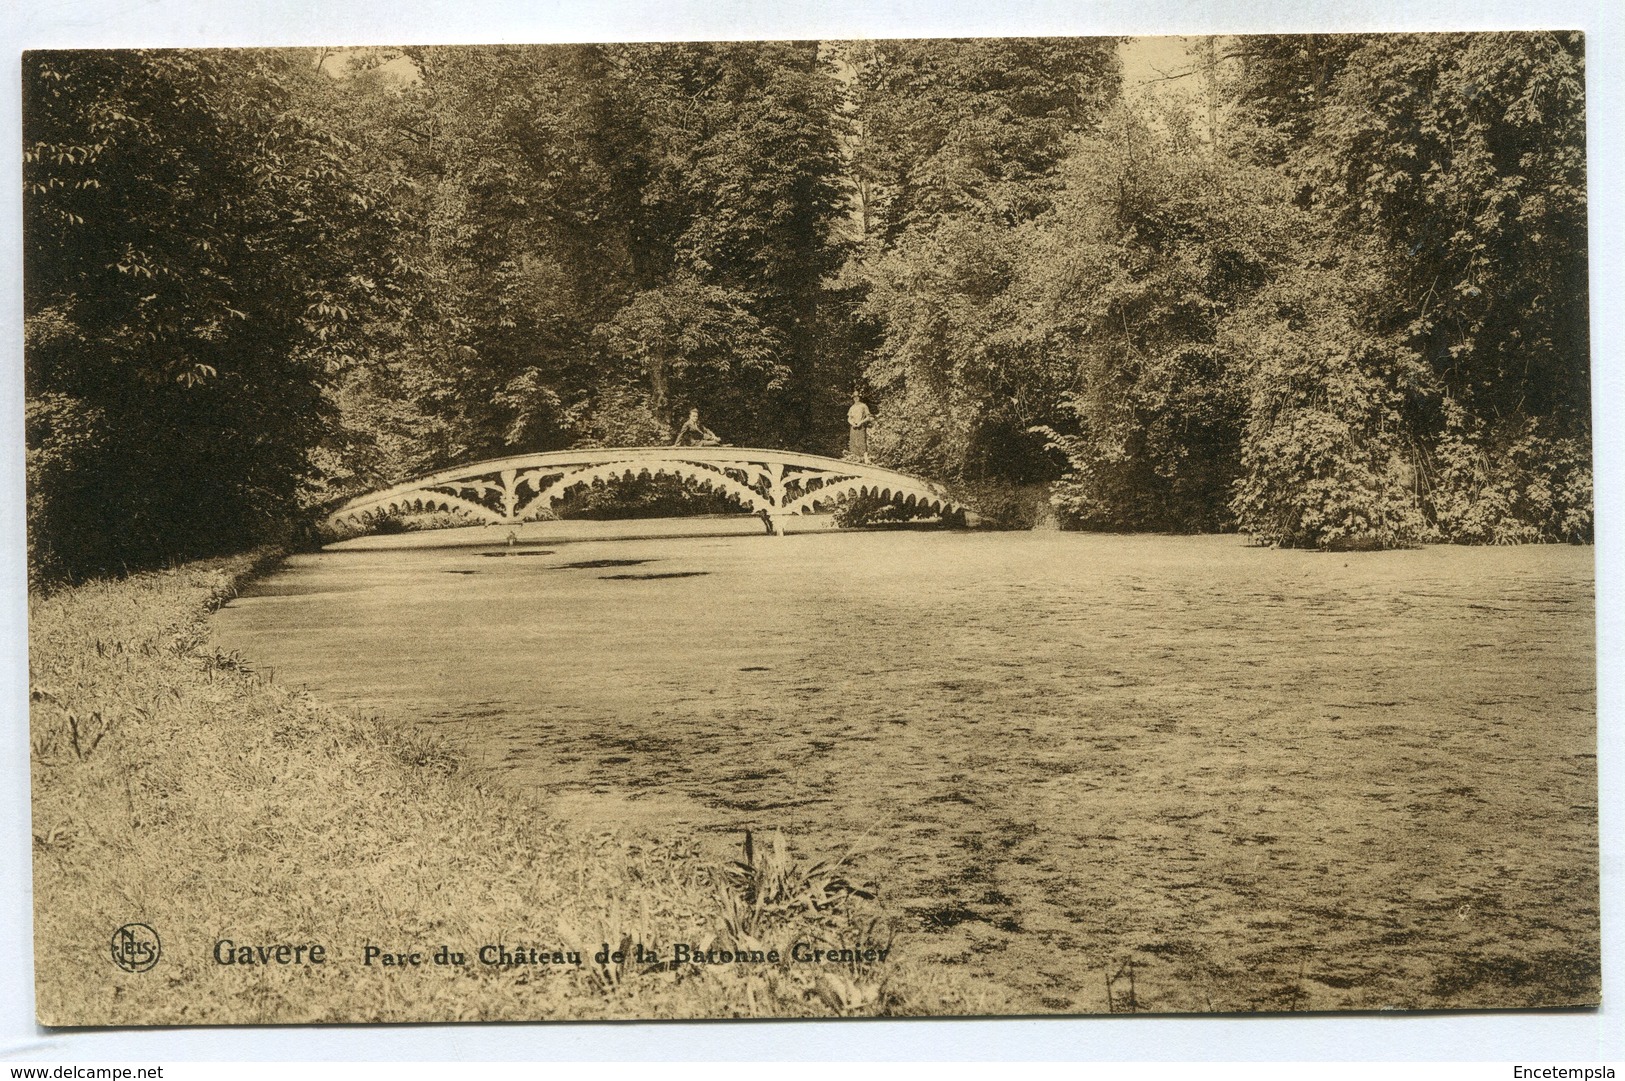 CPA - Carte Postale - Belgique - Gavere - Parc Du Château De La Baronne Grenier - 1936 (SV6738) - Gavere